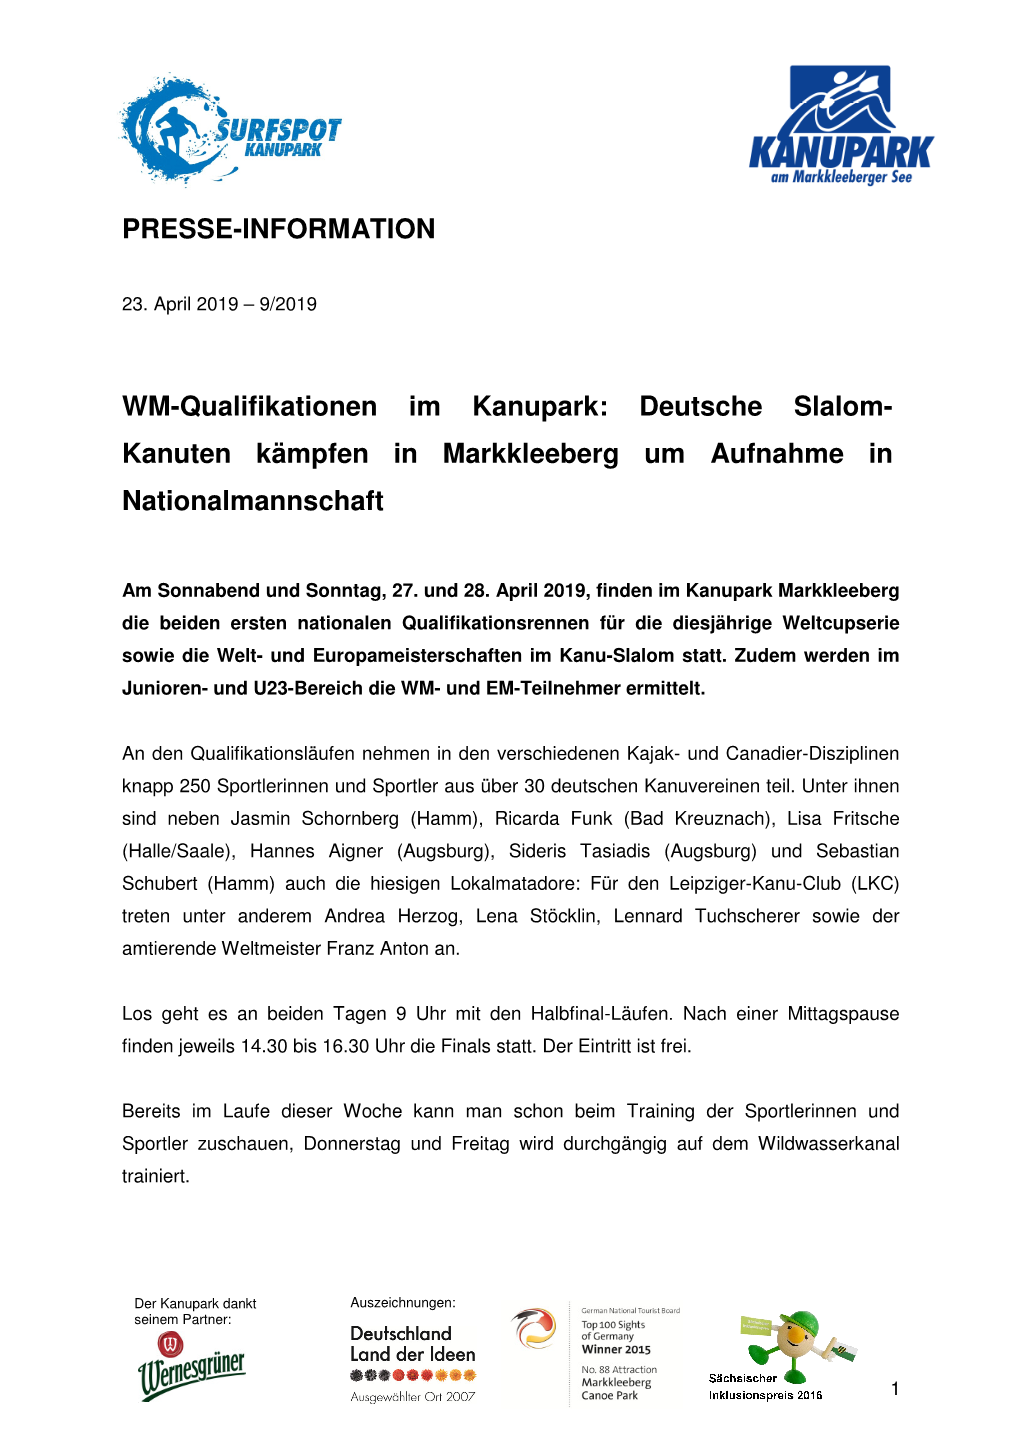 PRESSE-INFORMATION WM-Qualifikationen Im Kanupark